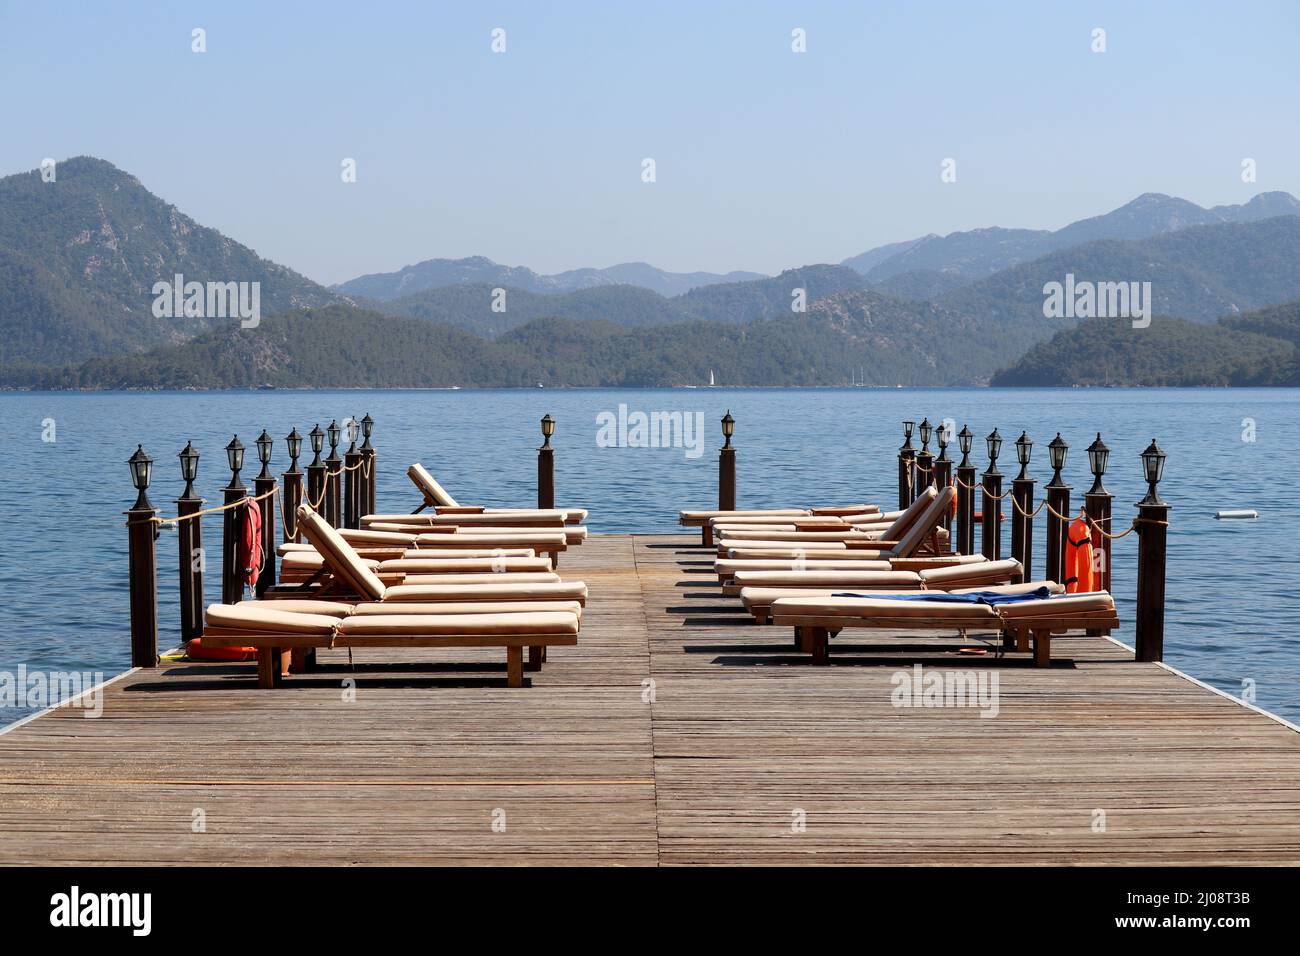 Strandurlaub am Meer Resort in der Ägäis Küste der Türkei, Liegestühle auf einem hölzernen Pier gegen Berge. Leere Sonnenliegen auf grünem Uferhintergrund Stockfoto